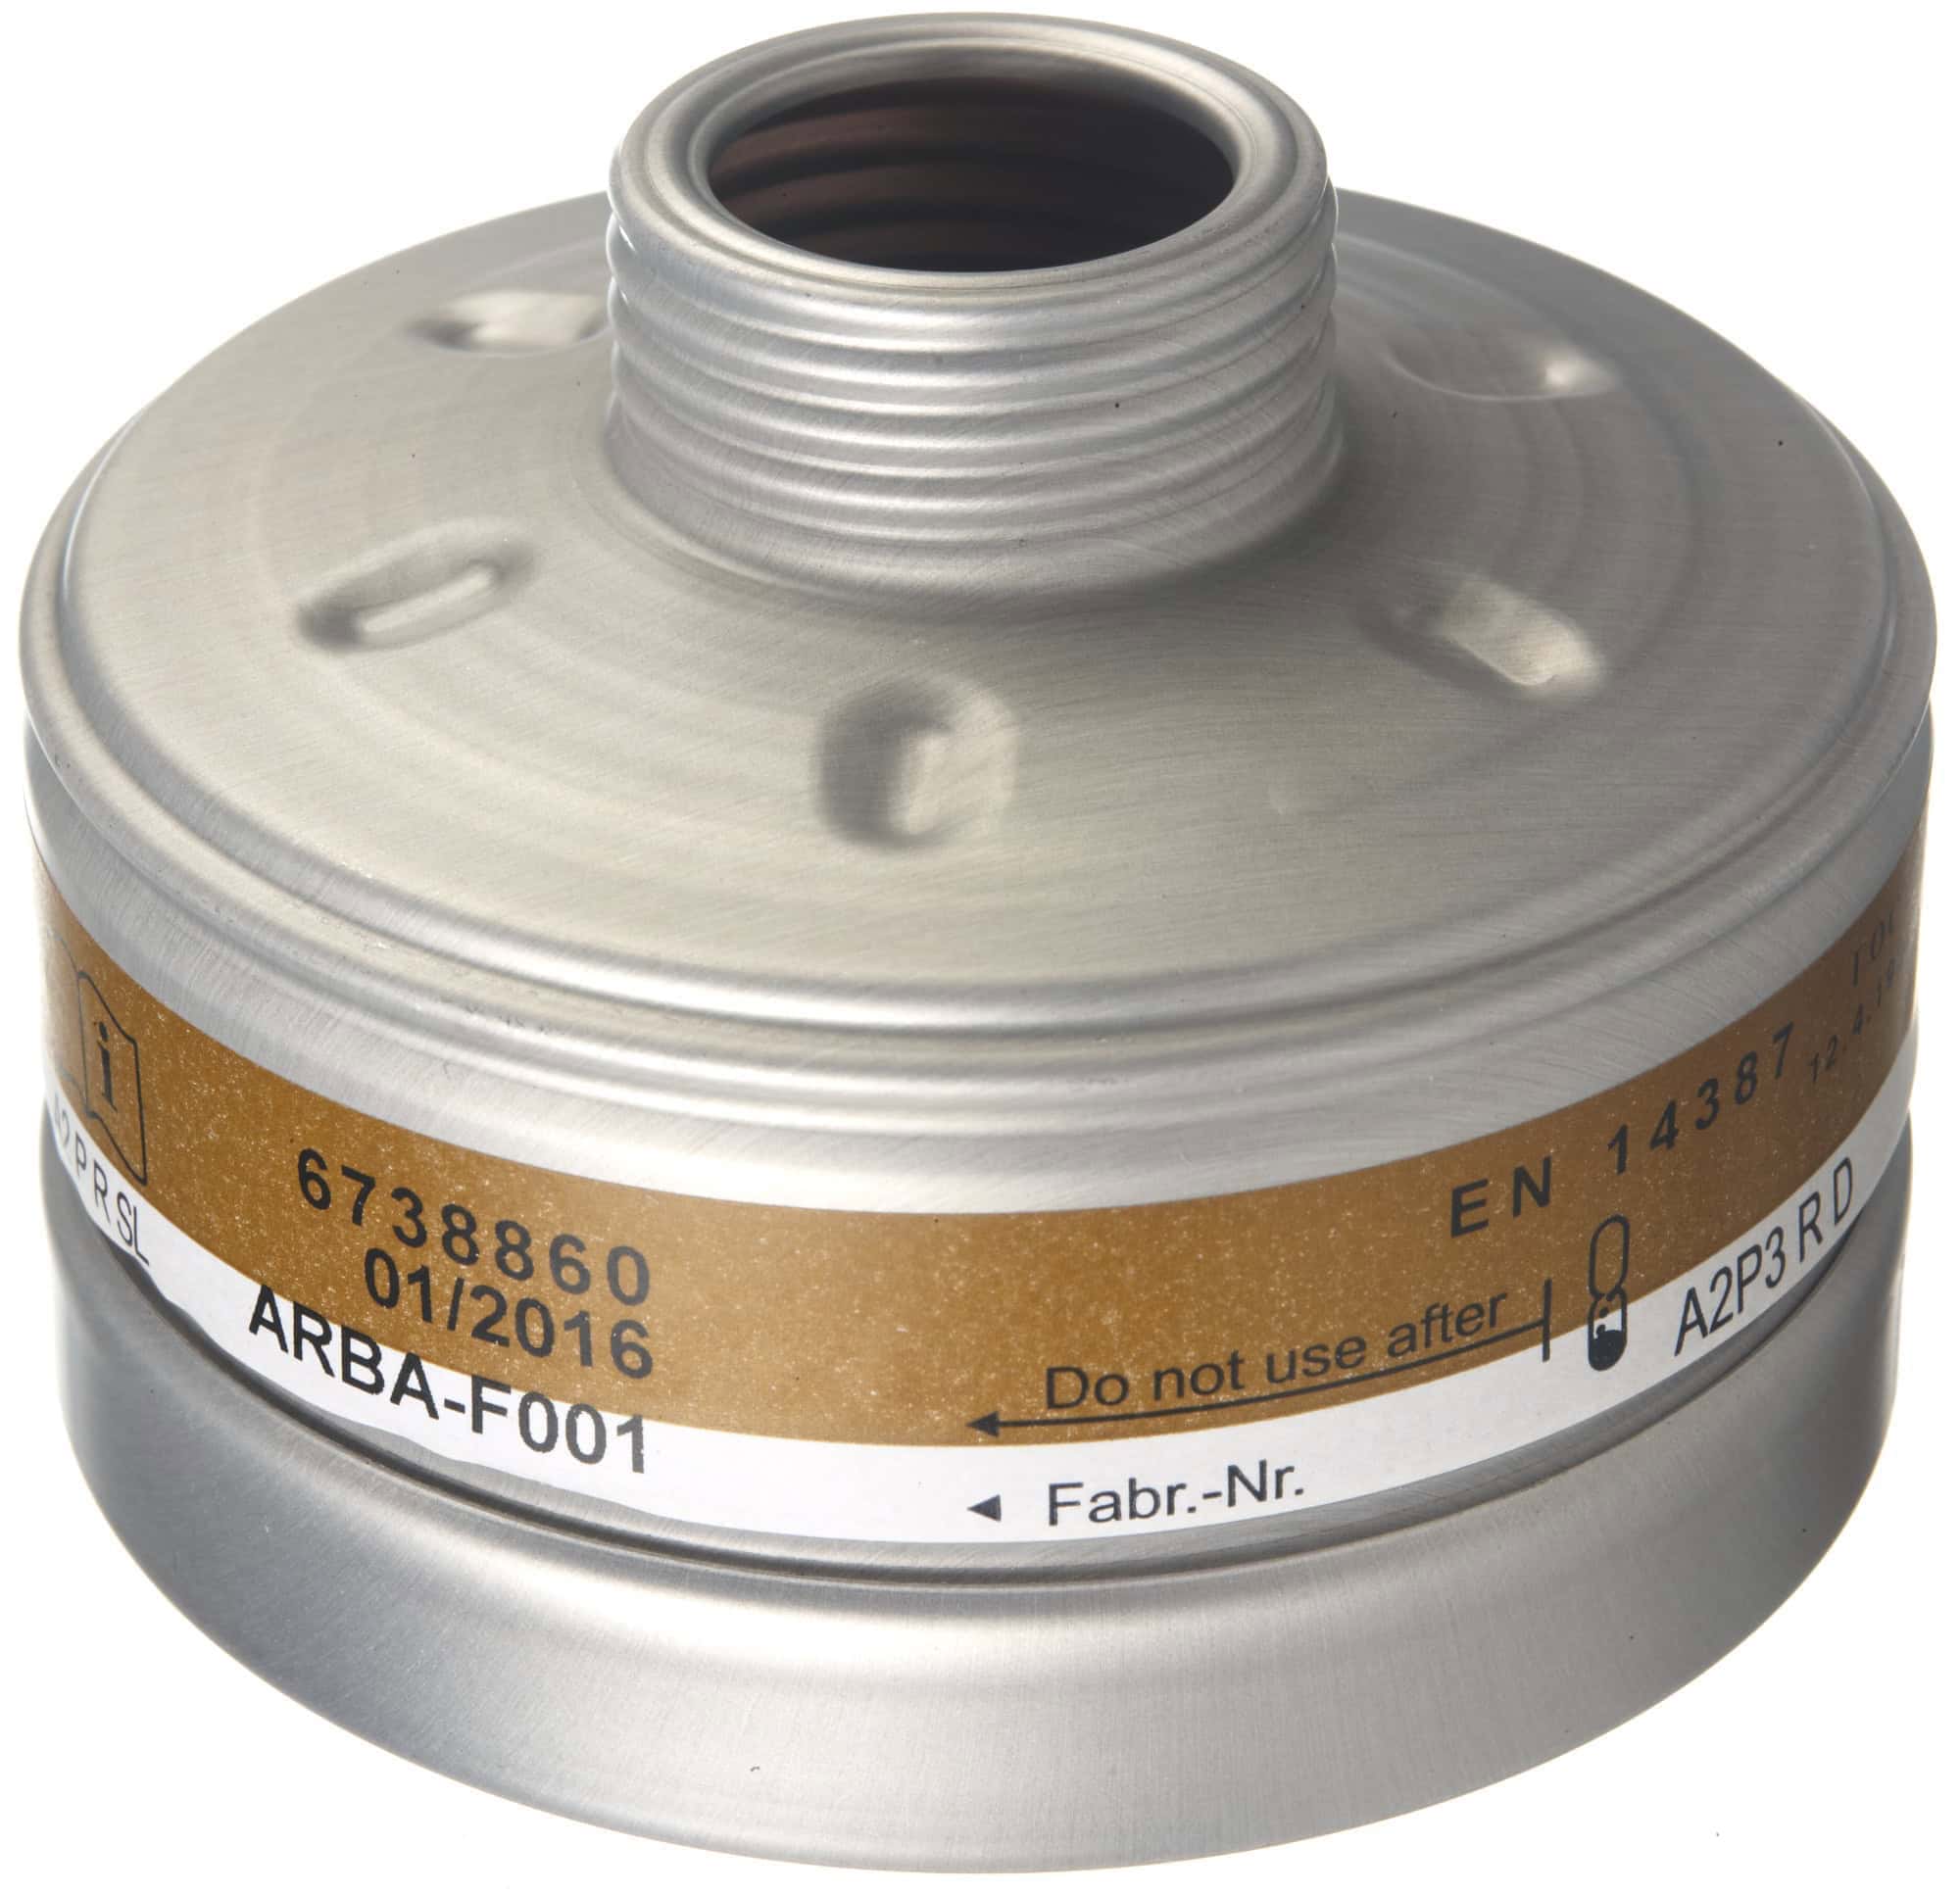 Dräger® X-plore® RD40 Kombi Filter 1140, 6738860, A2 P3 R D, 40 mm Rundfilteranschluss [NATO Standard], Kombinationsfilter gegen organische Gase & Dämpfe + Partikel